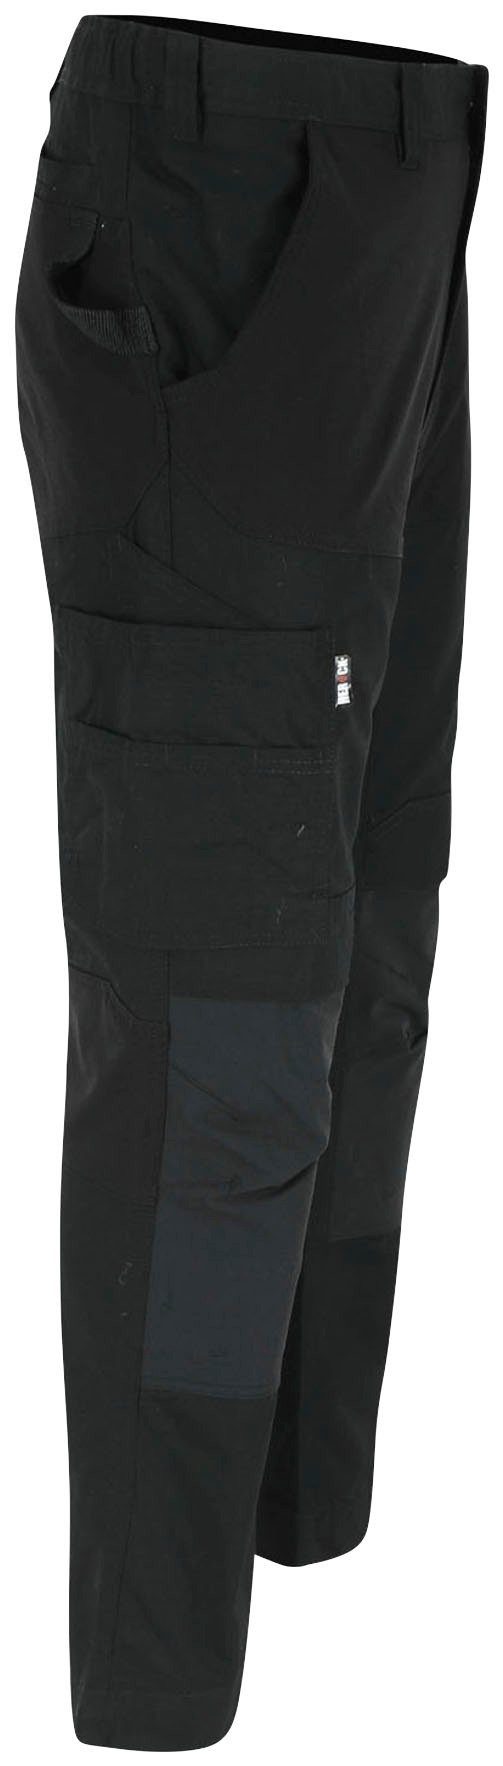 SHORTLEG Multi-Pocket, feste Hoses Kurzgröβe, schwarz 2 Nageltaschen Hector und 4-Wege-Stretch-Teile Arbeitshose Herock